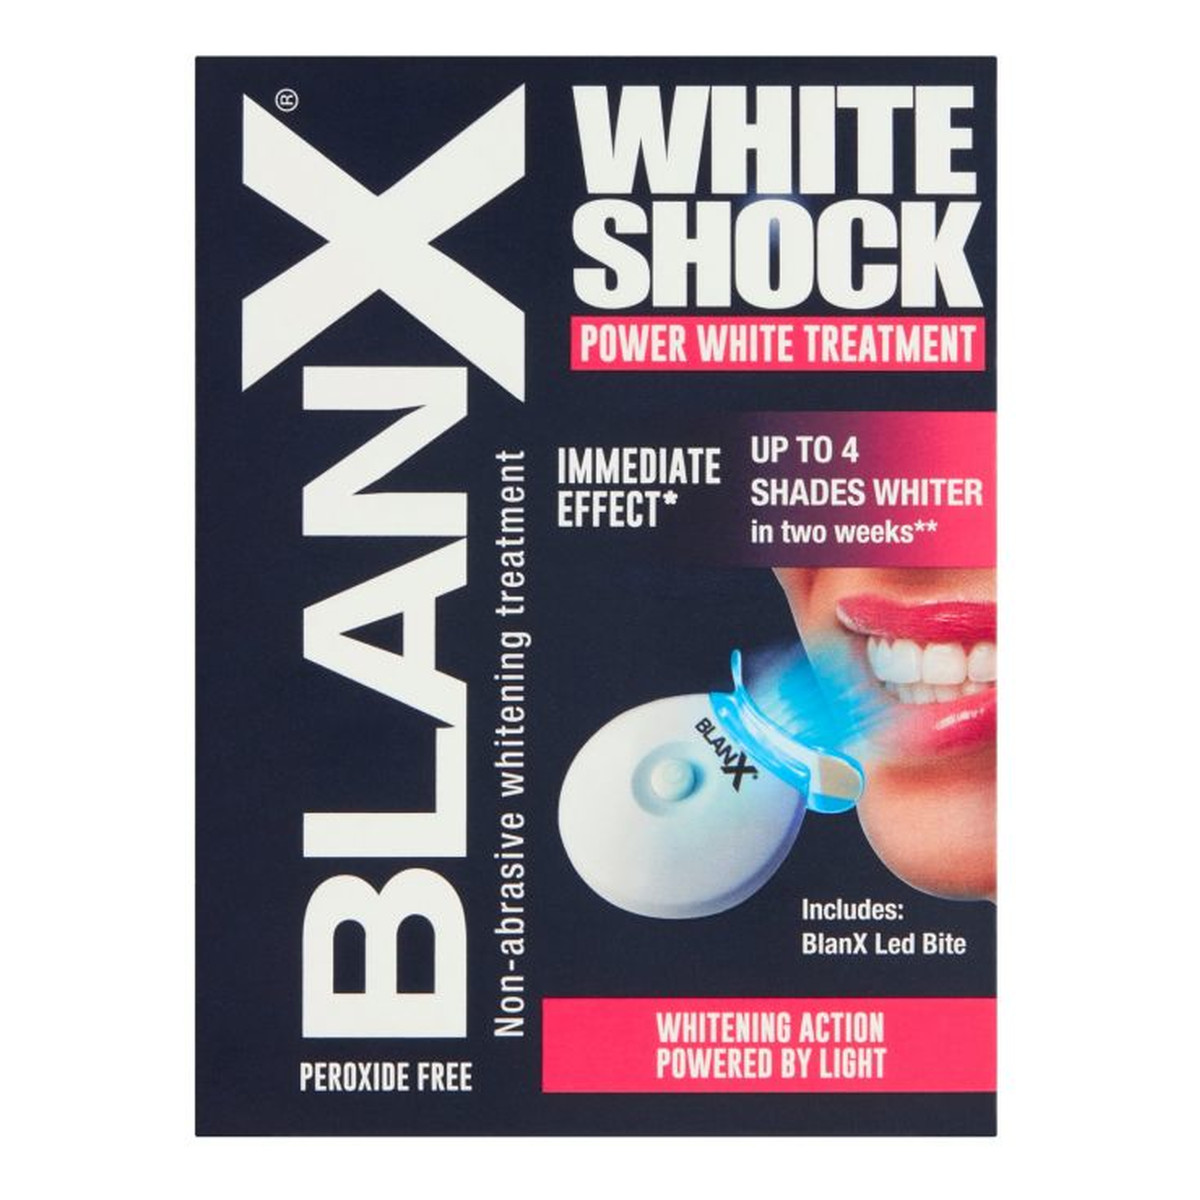 BlanX White Shock Intensywny System wybielający zęby (pasta +lampka led) 50ml